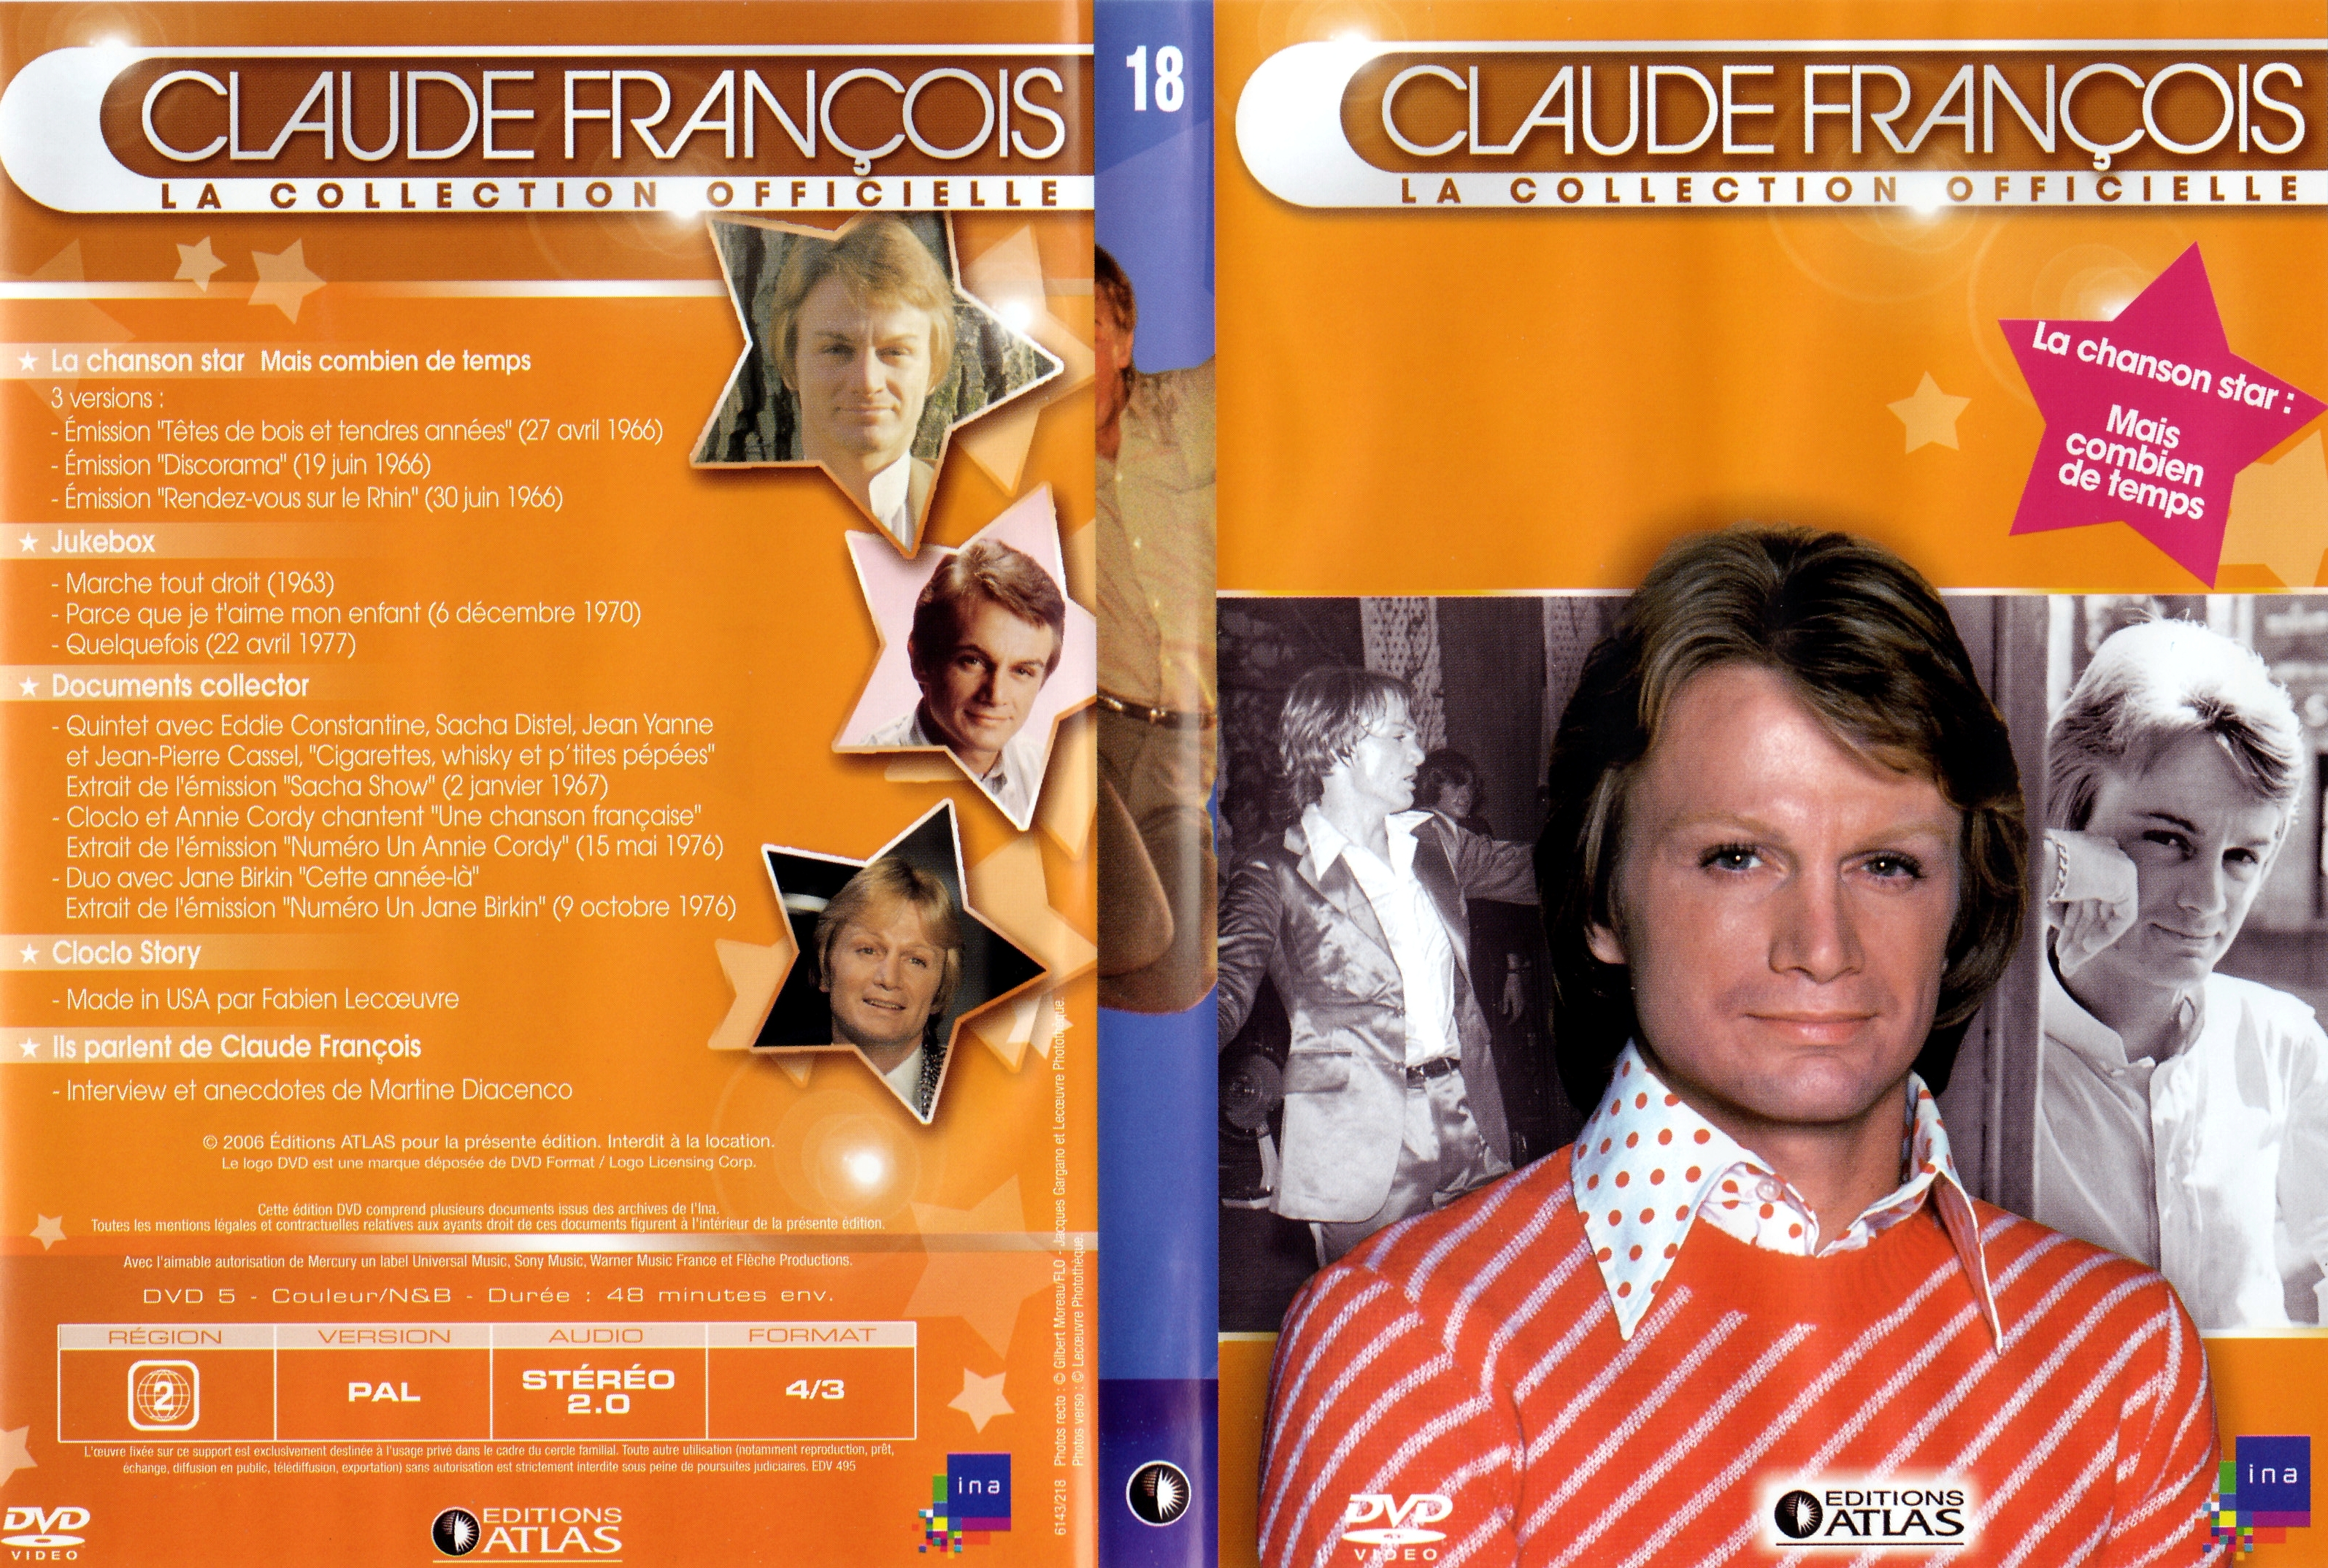 Jaquette DVD Claude Francois la collection officielle vol 18